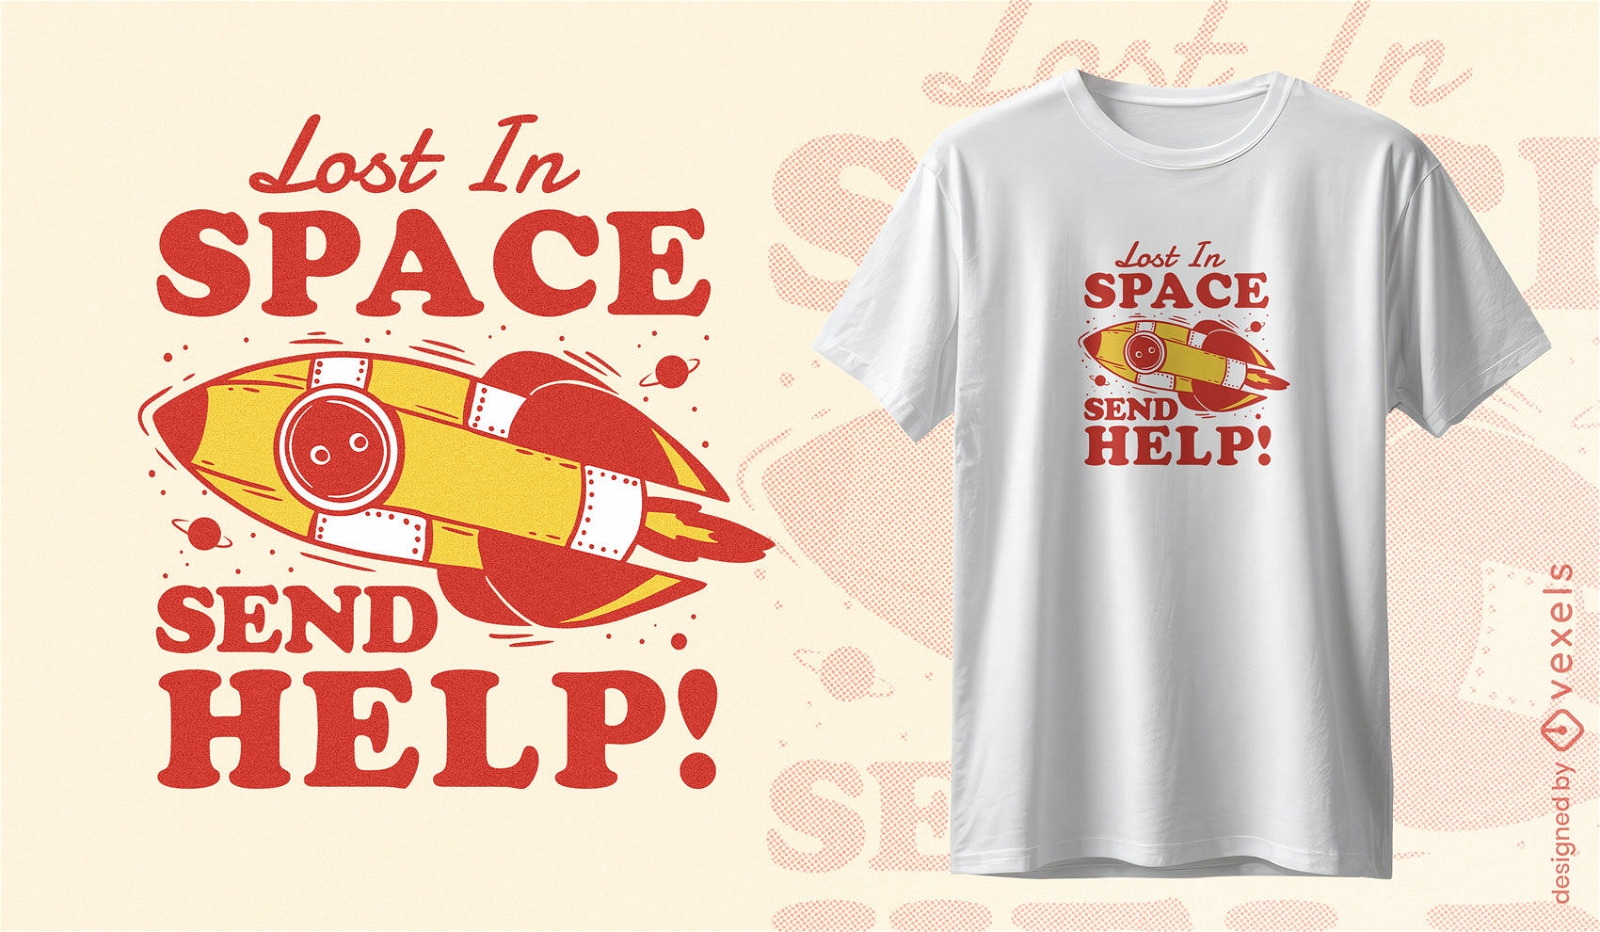 Dise?o de camiseta de cohete espacial perdido.